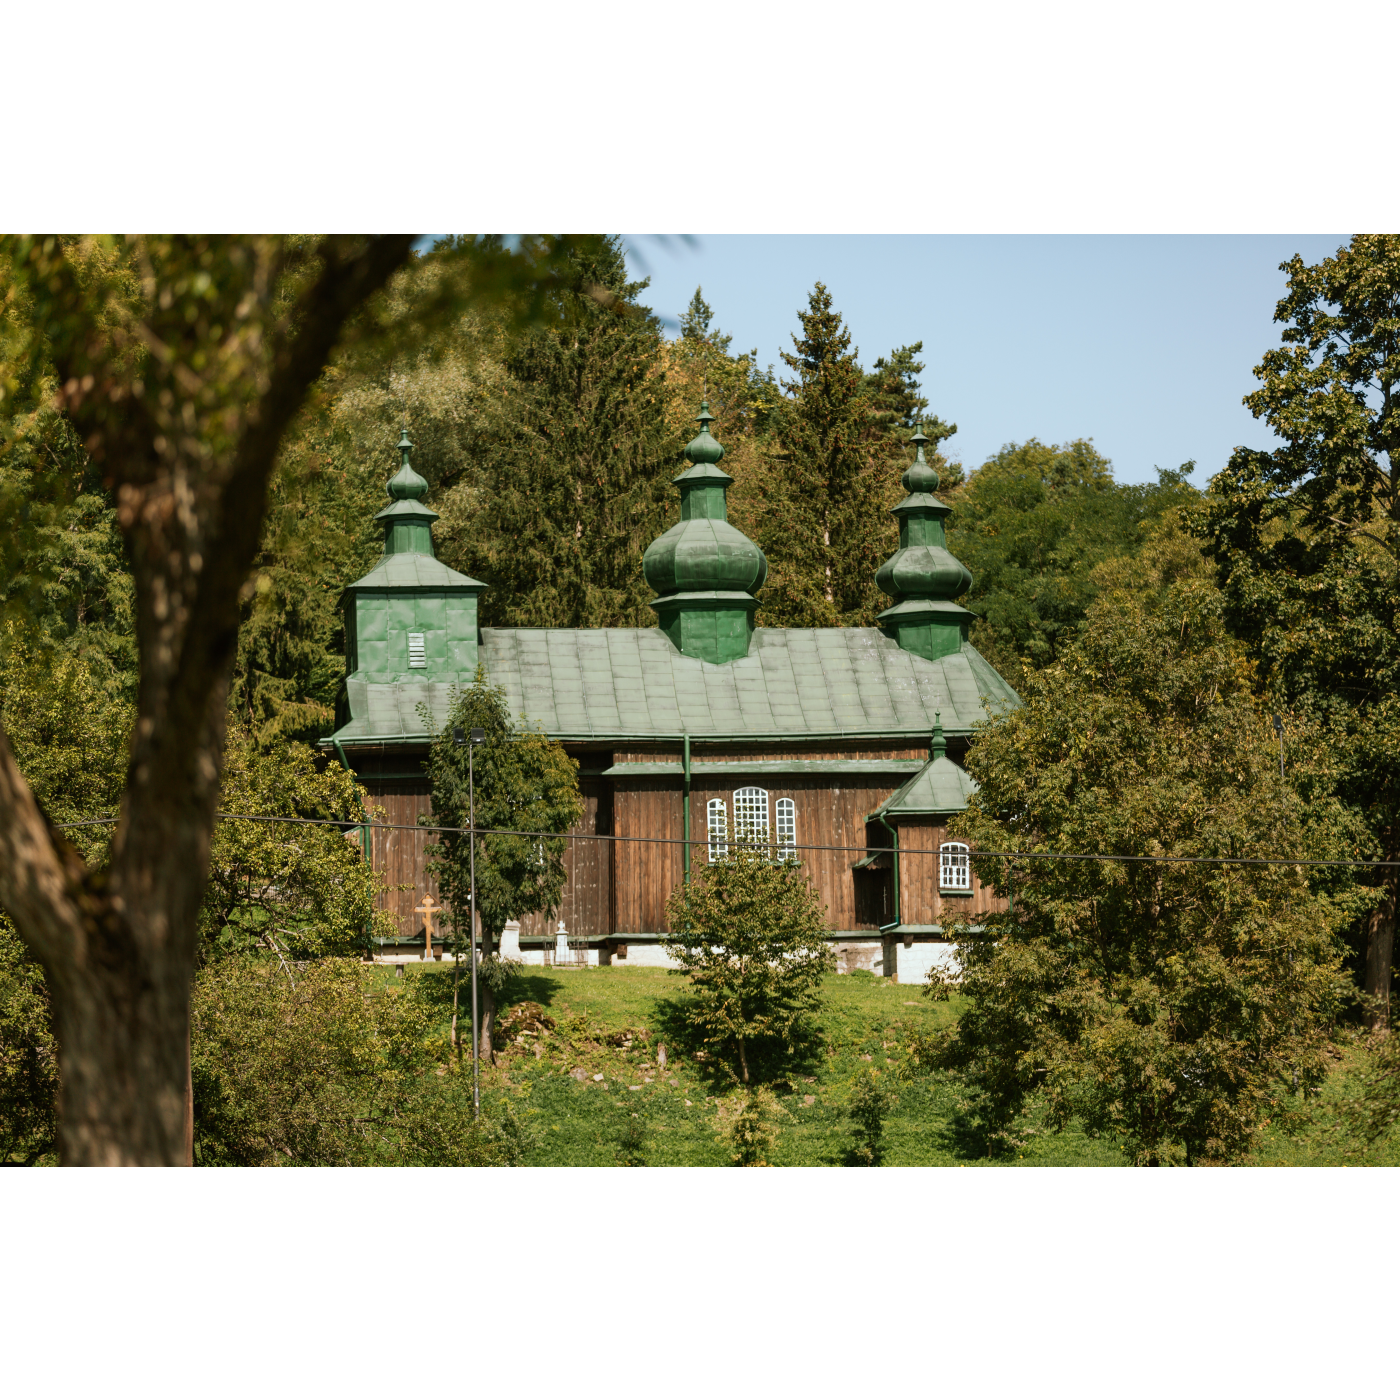 Drewniana cerkiew z zielonym dachem zwieńczonym trzema kopułami stojąca wśród zielonych, wysokich drzew